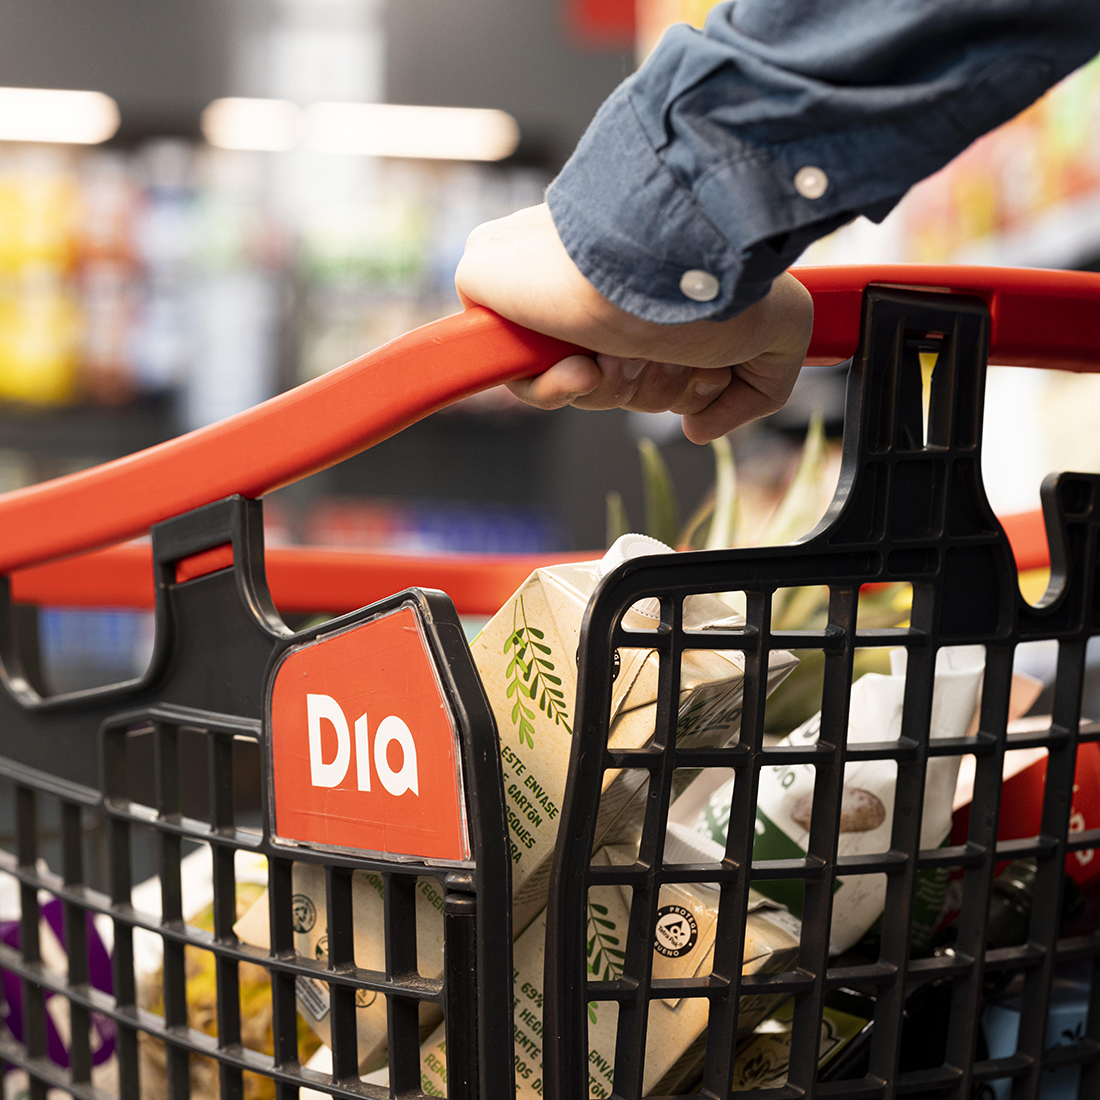 Dia refuerza sus promociones con productos a 1 y 2 euros para ayudar a los hogares a ahorrar durante la cuesta de enero